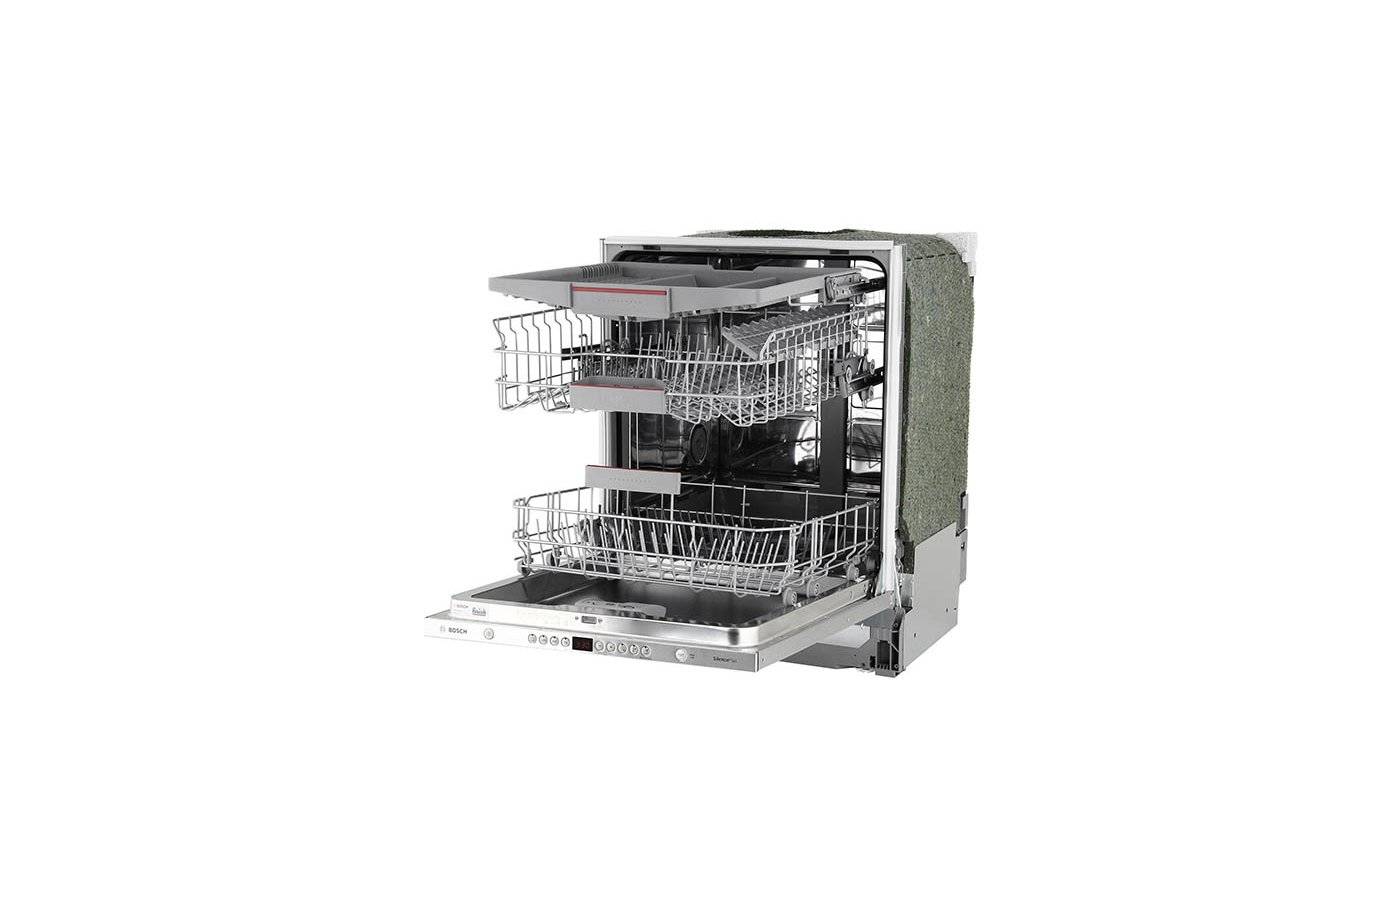 Посудомоечная машина bosch serie 4 smv44kx00r: отзывы, технические характеристики